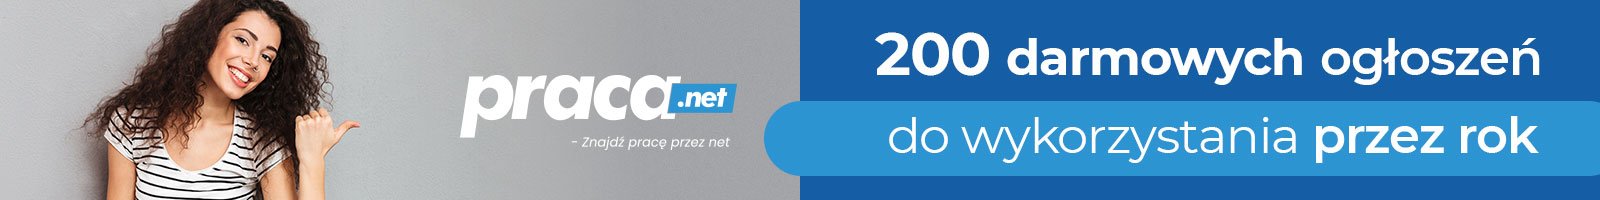 Praca.net - znajdź pracę przez net